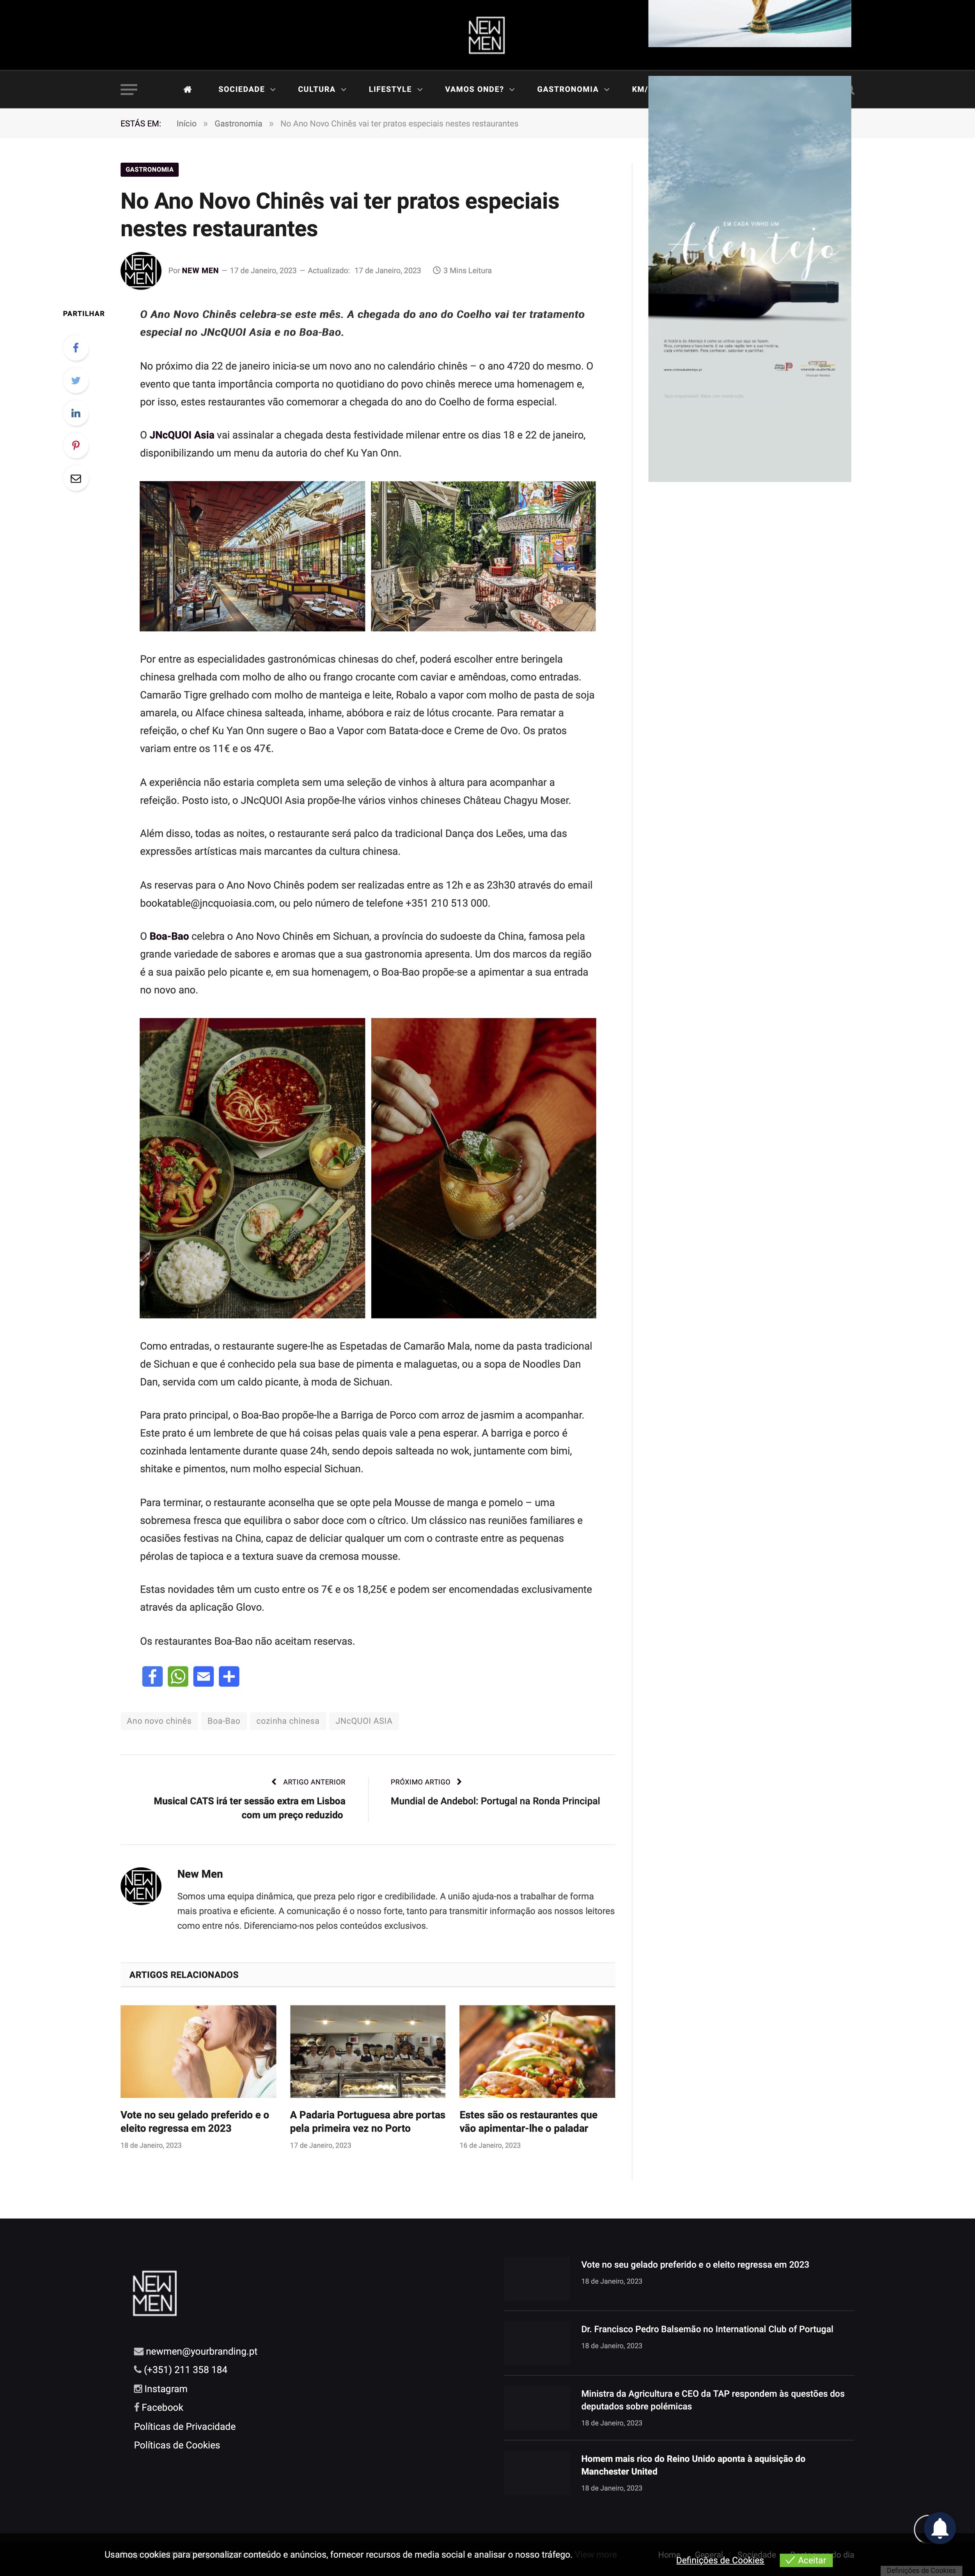 NewMen Online_En el Año Nuevo Chino habrá platos especiales en estos restaurantes.jpg